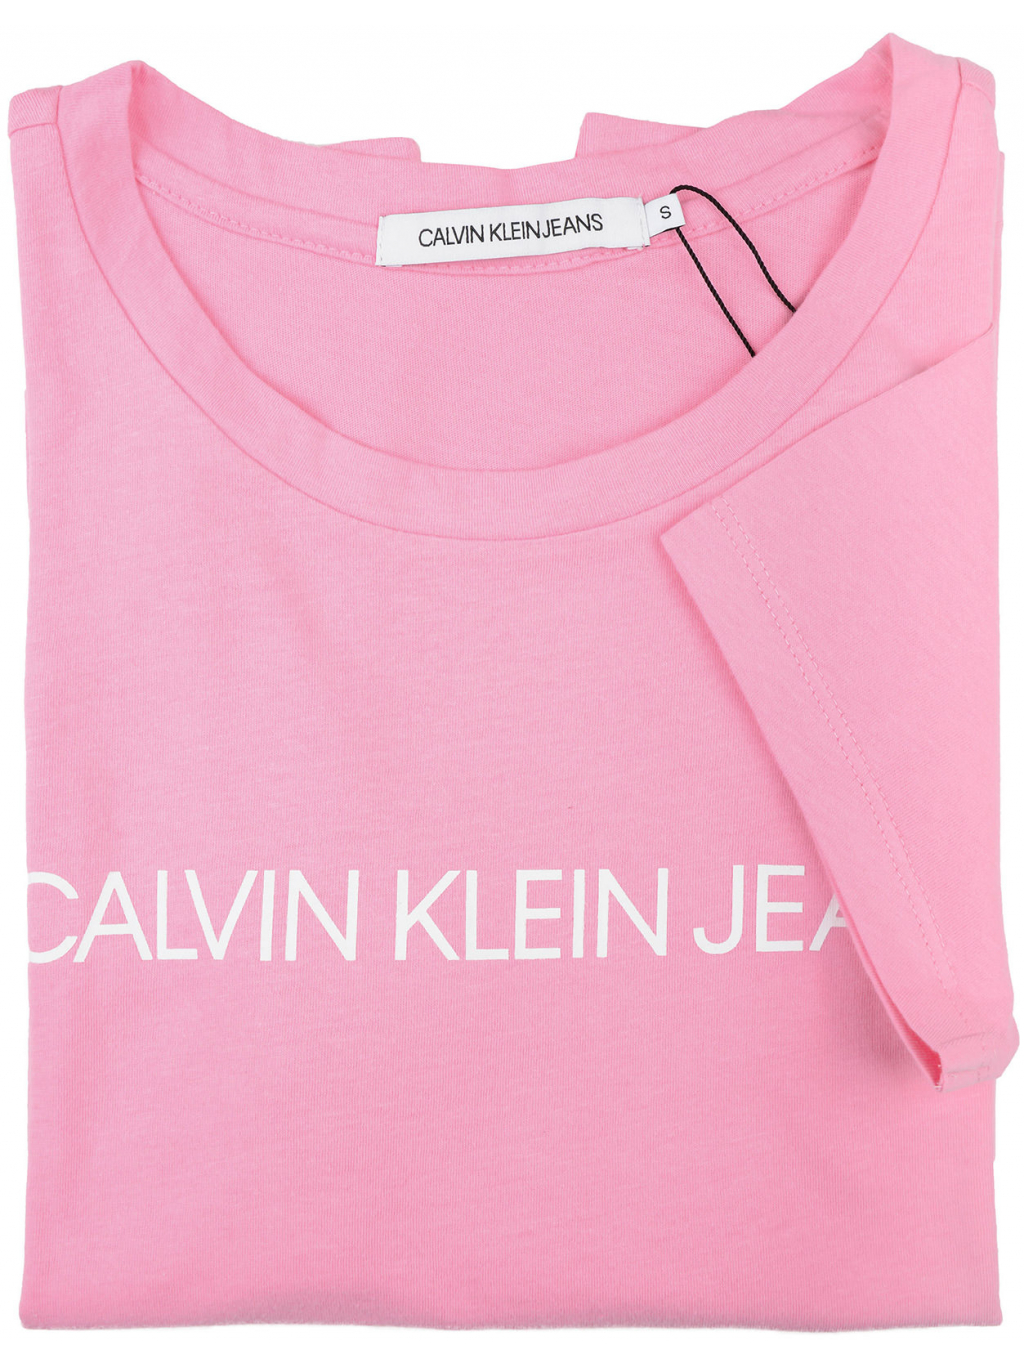 Dámské růžové tričko s nápisem Calvin Klein Jeans - Fashion Shack